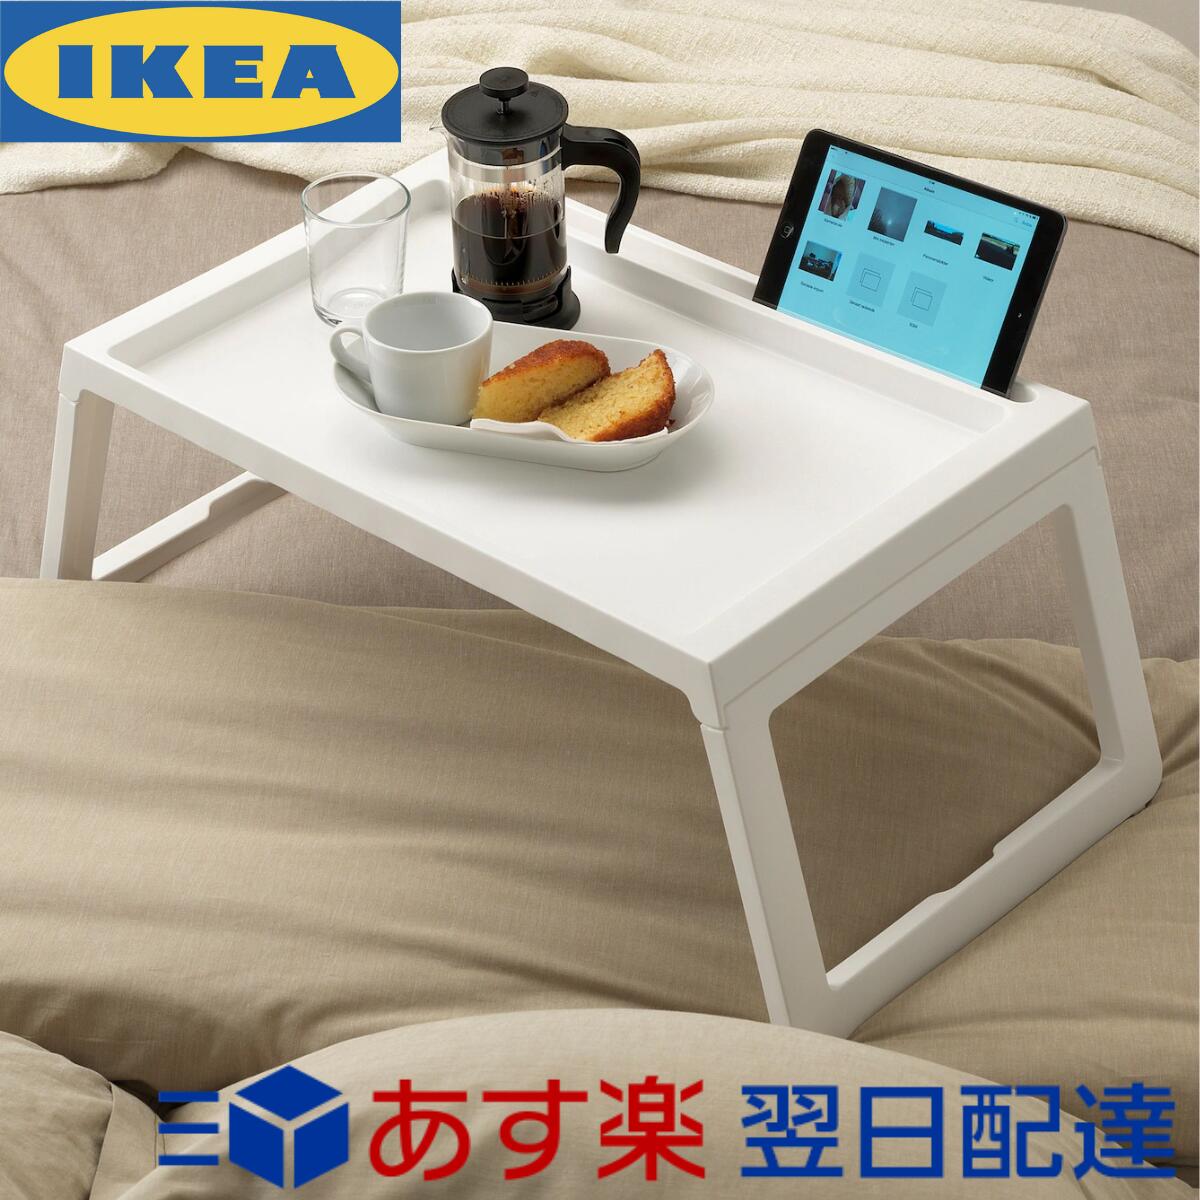 迅速発送 送料無料 ポイント消化 IKEA KLIPSK ベッドトレイ 36×56×26cm イケア 2020春夏新作 おしゃれ ベッドテーブル ローテーブル 毎日がバーゲンセール 折りたたみ ホワイト 北欧 コーヒーテーブル 朝食テーブル